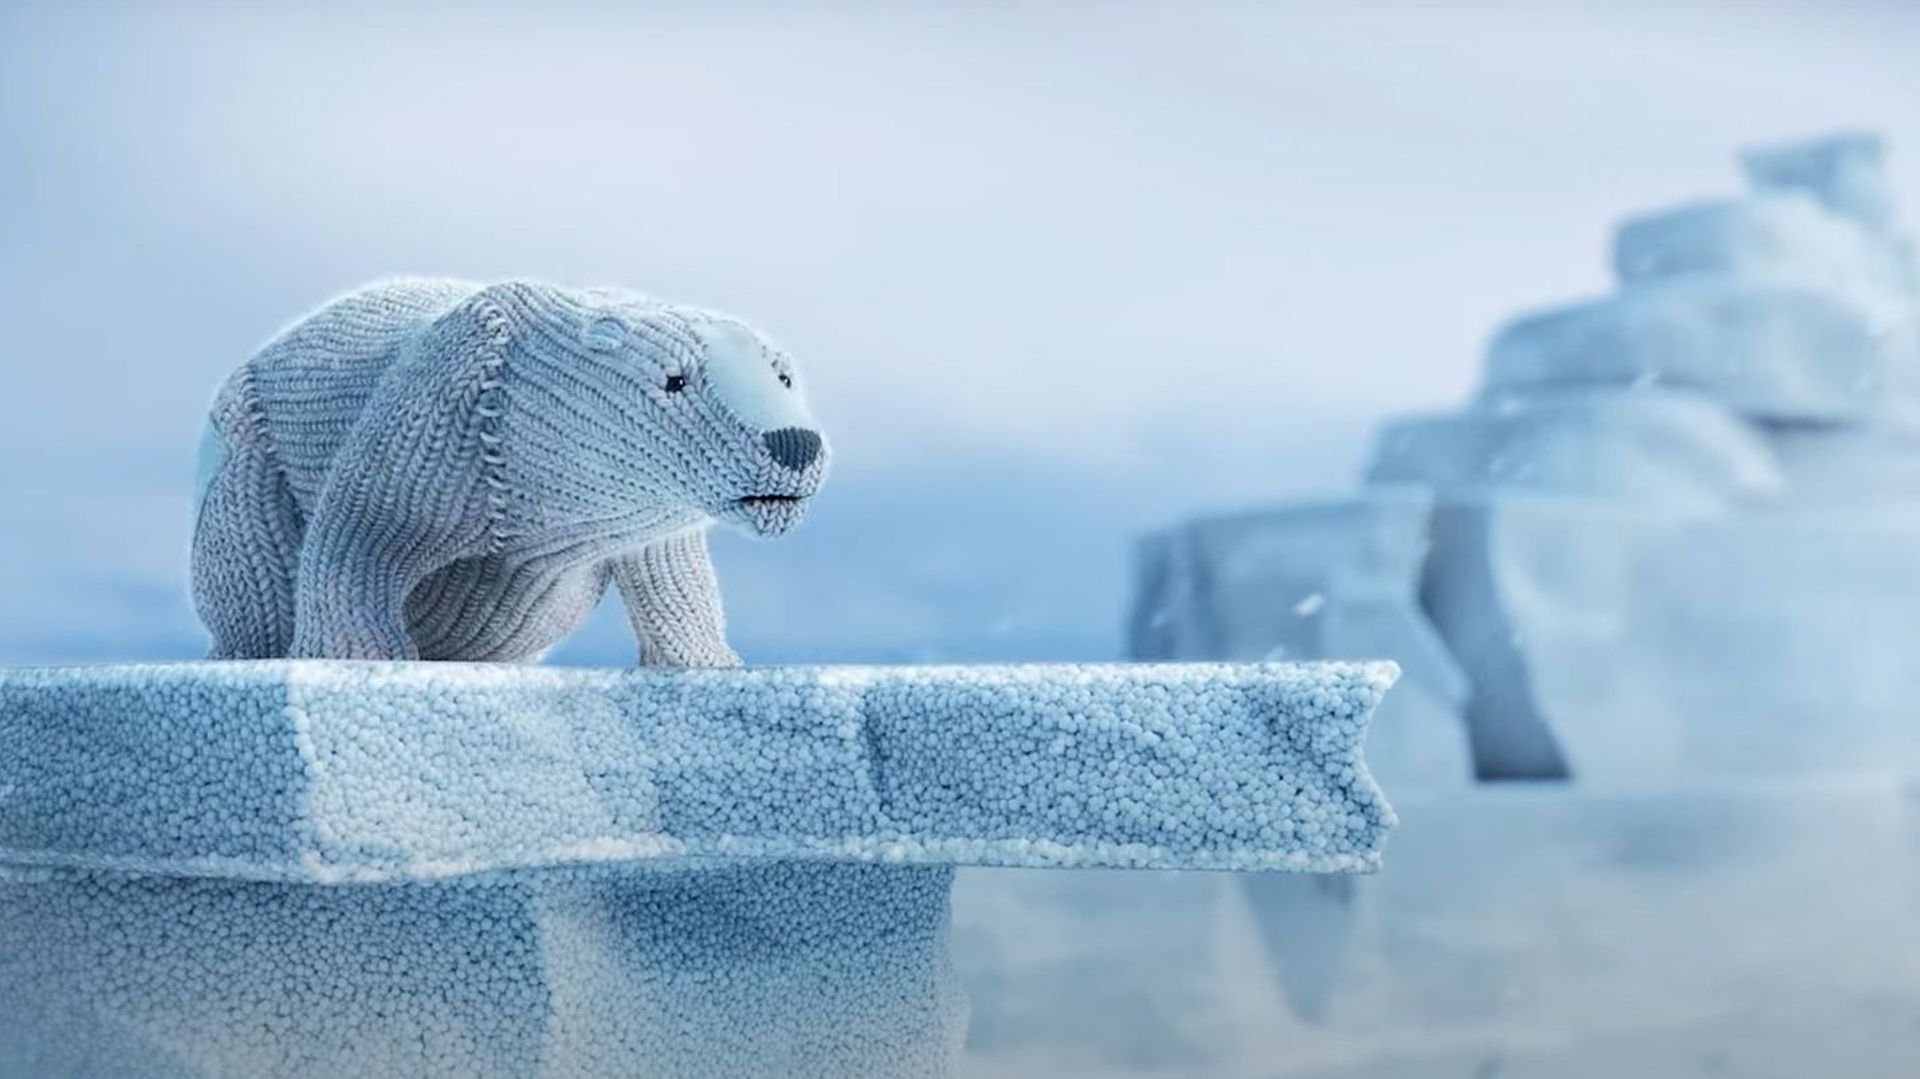 des-ours-populaires-premiers-refugies-climatiques-dans-un-film-d-animation-puissant